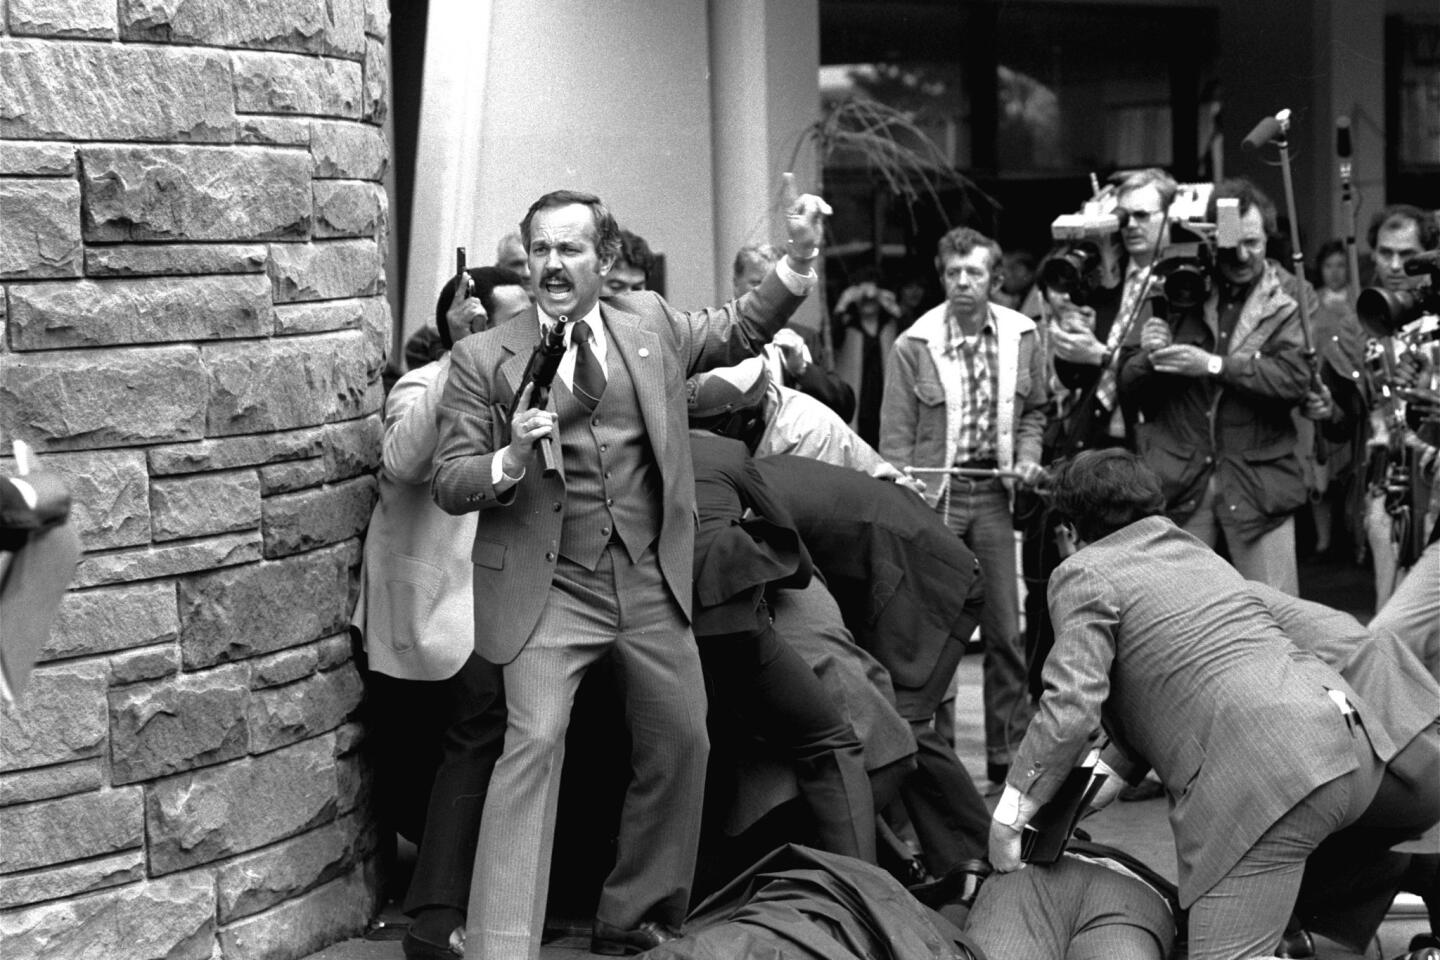 1981 assassination attempt on President Reagan